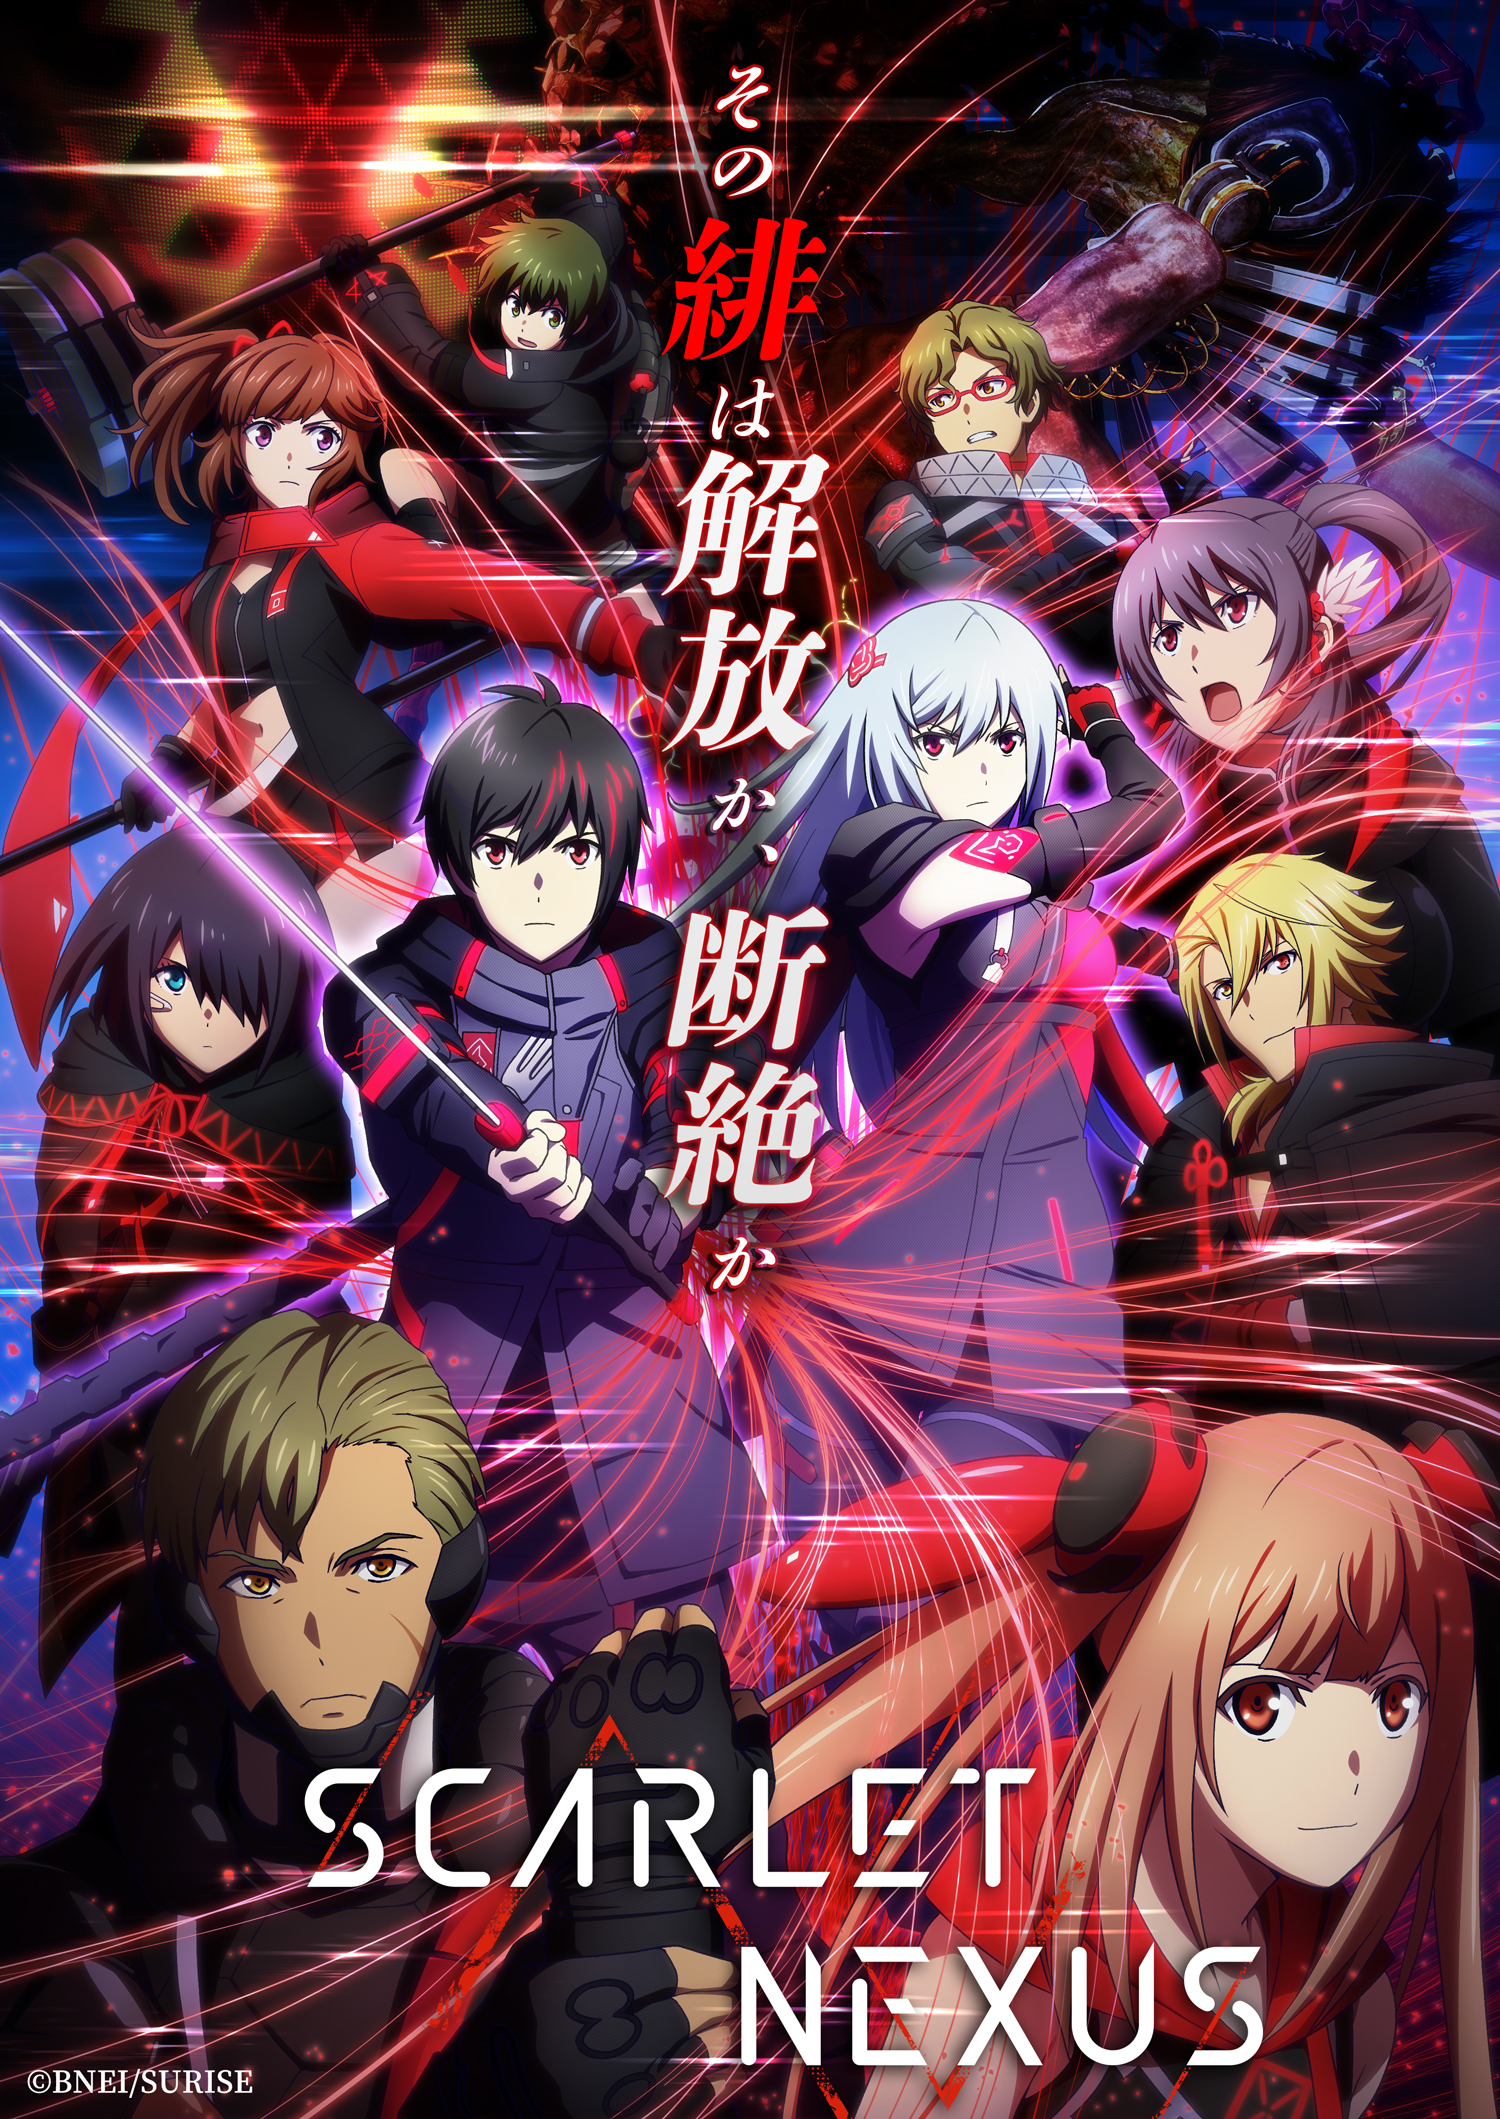 Scarlet Nexus Episode 2: A Gut-Wrenching Cliffhanger - Anime Corner